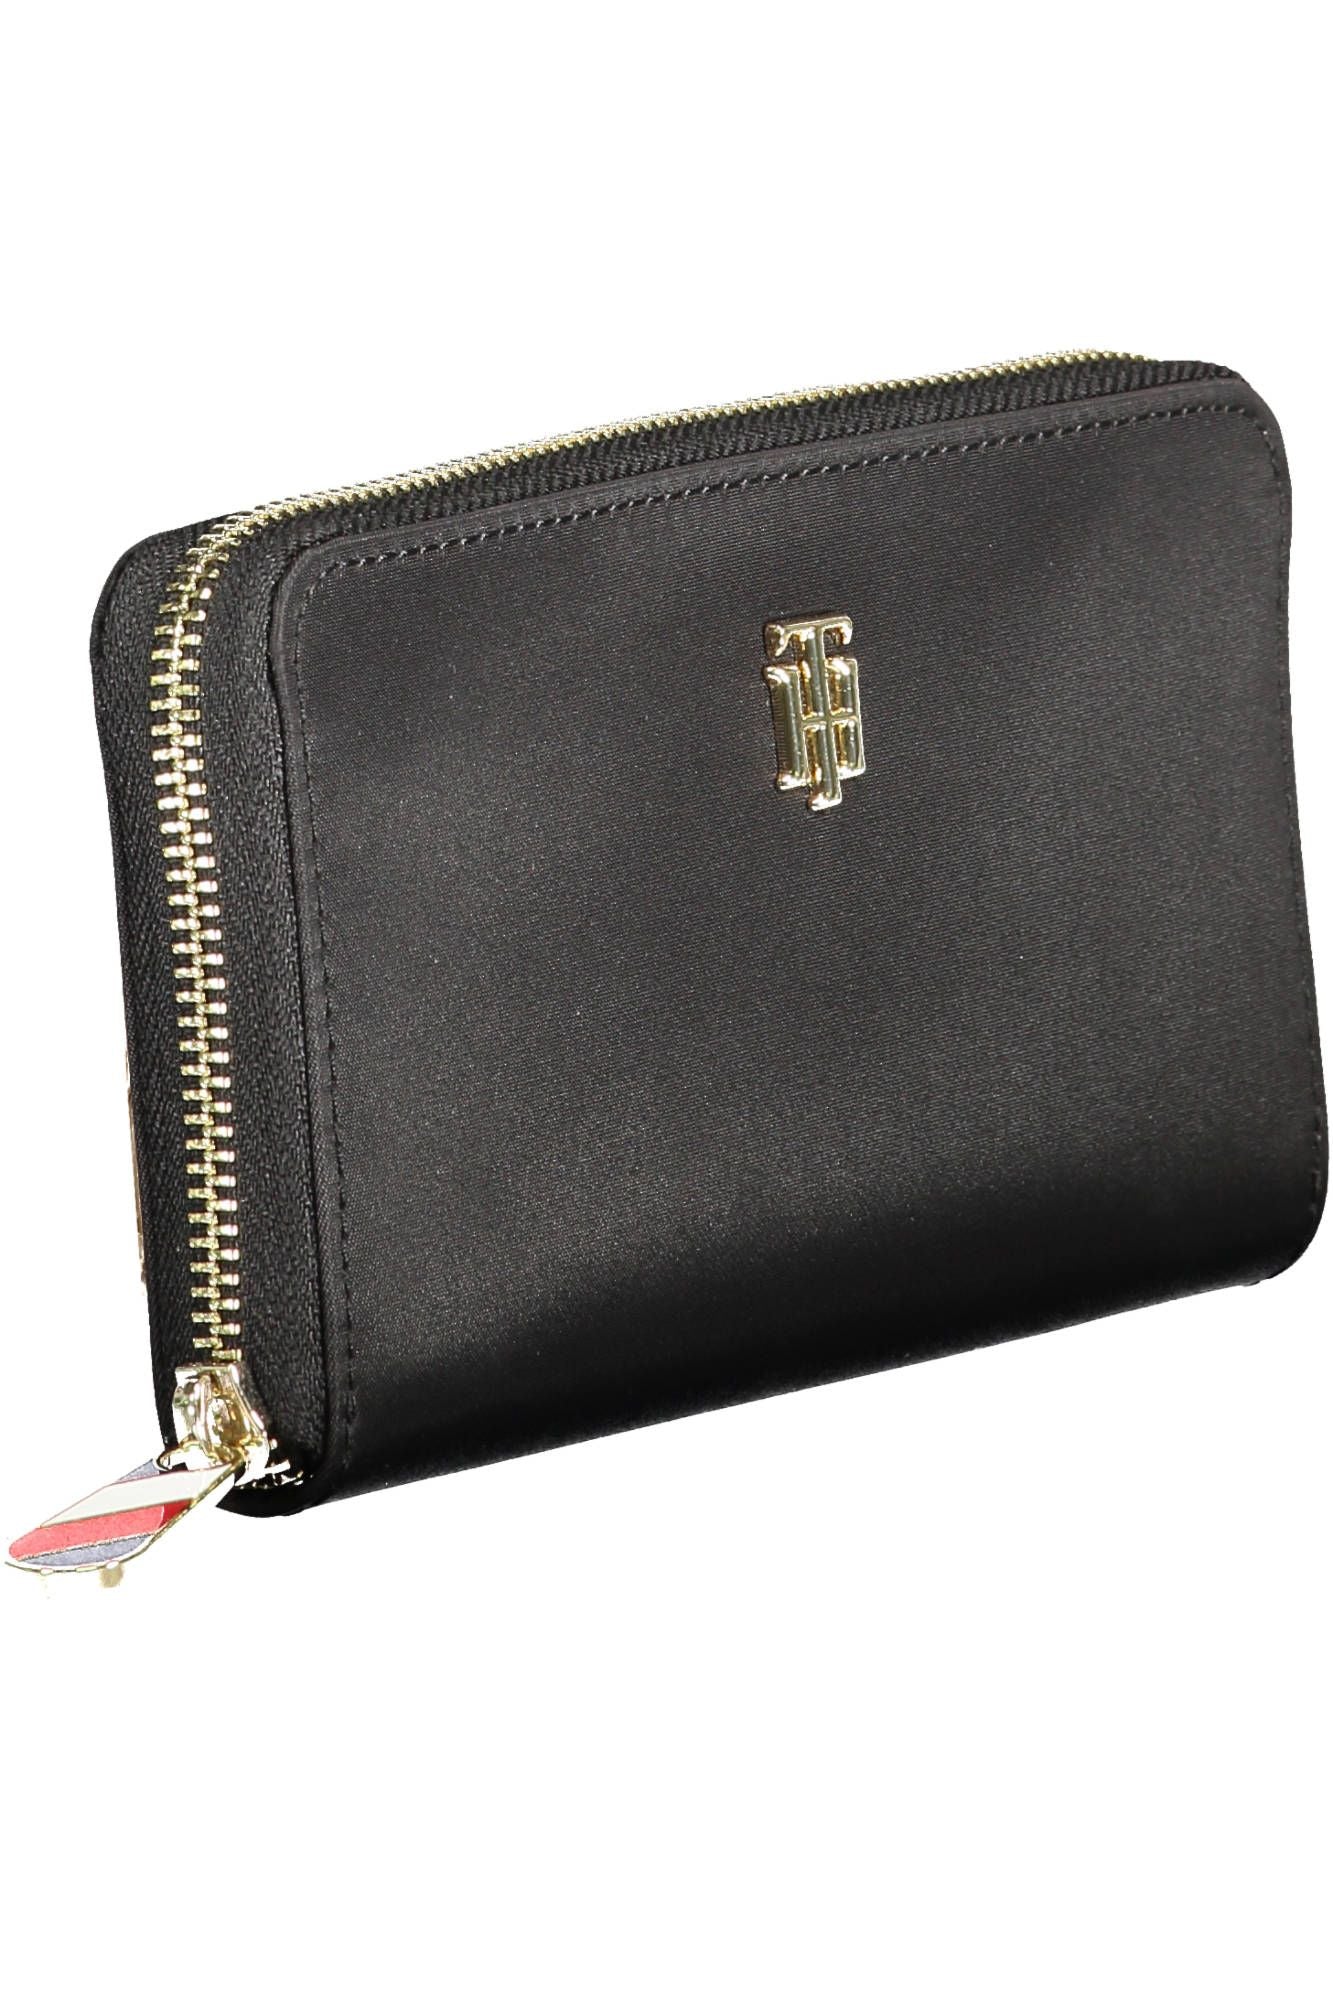 Elegant Black Designer Wallet with Refined Details